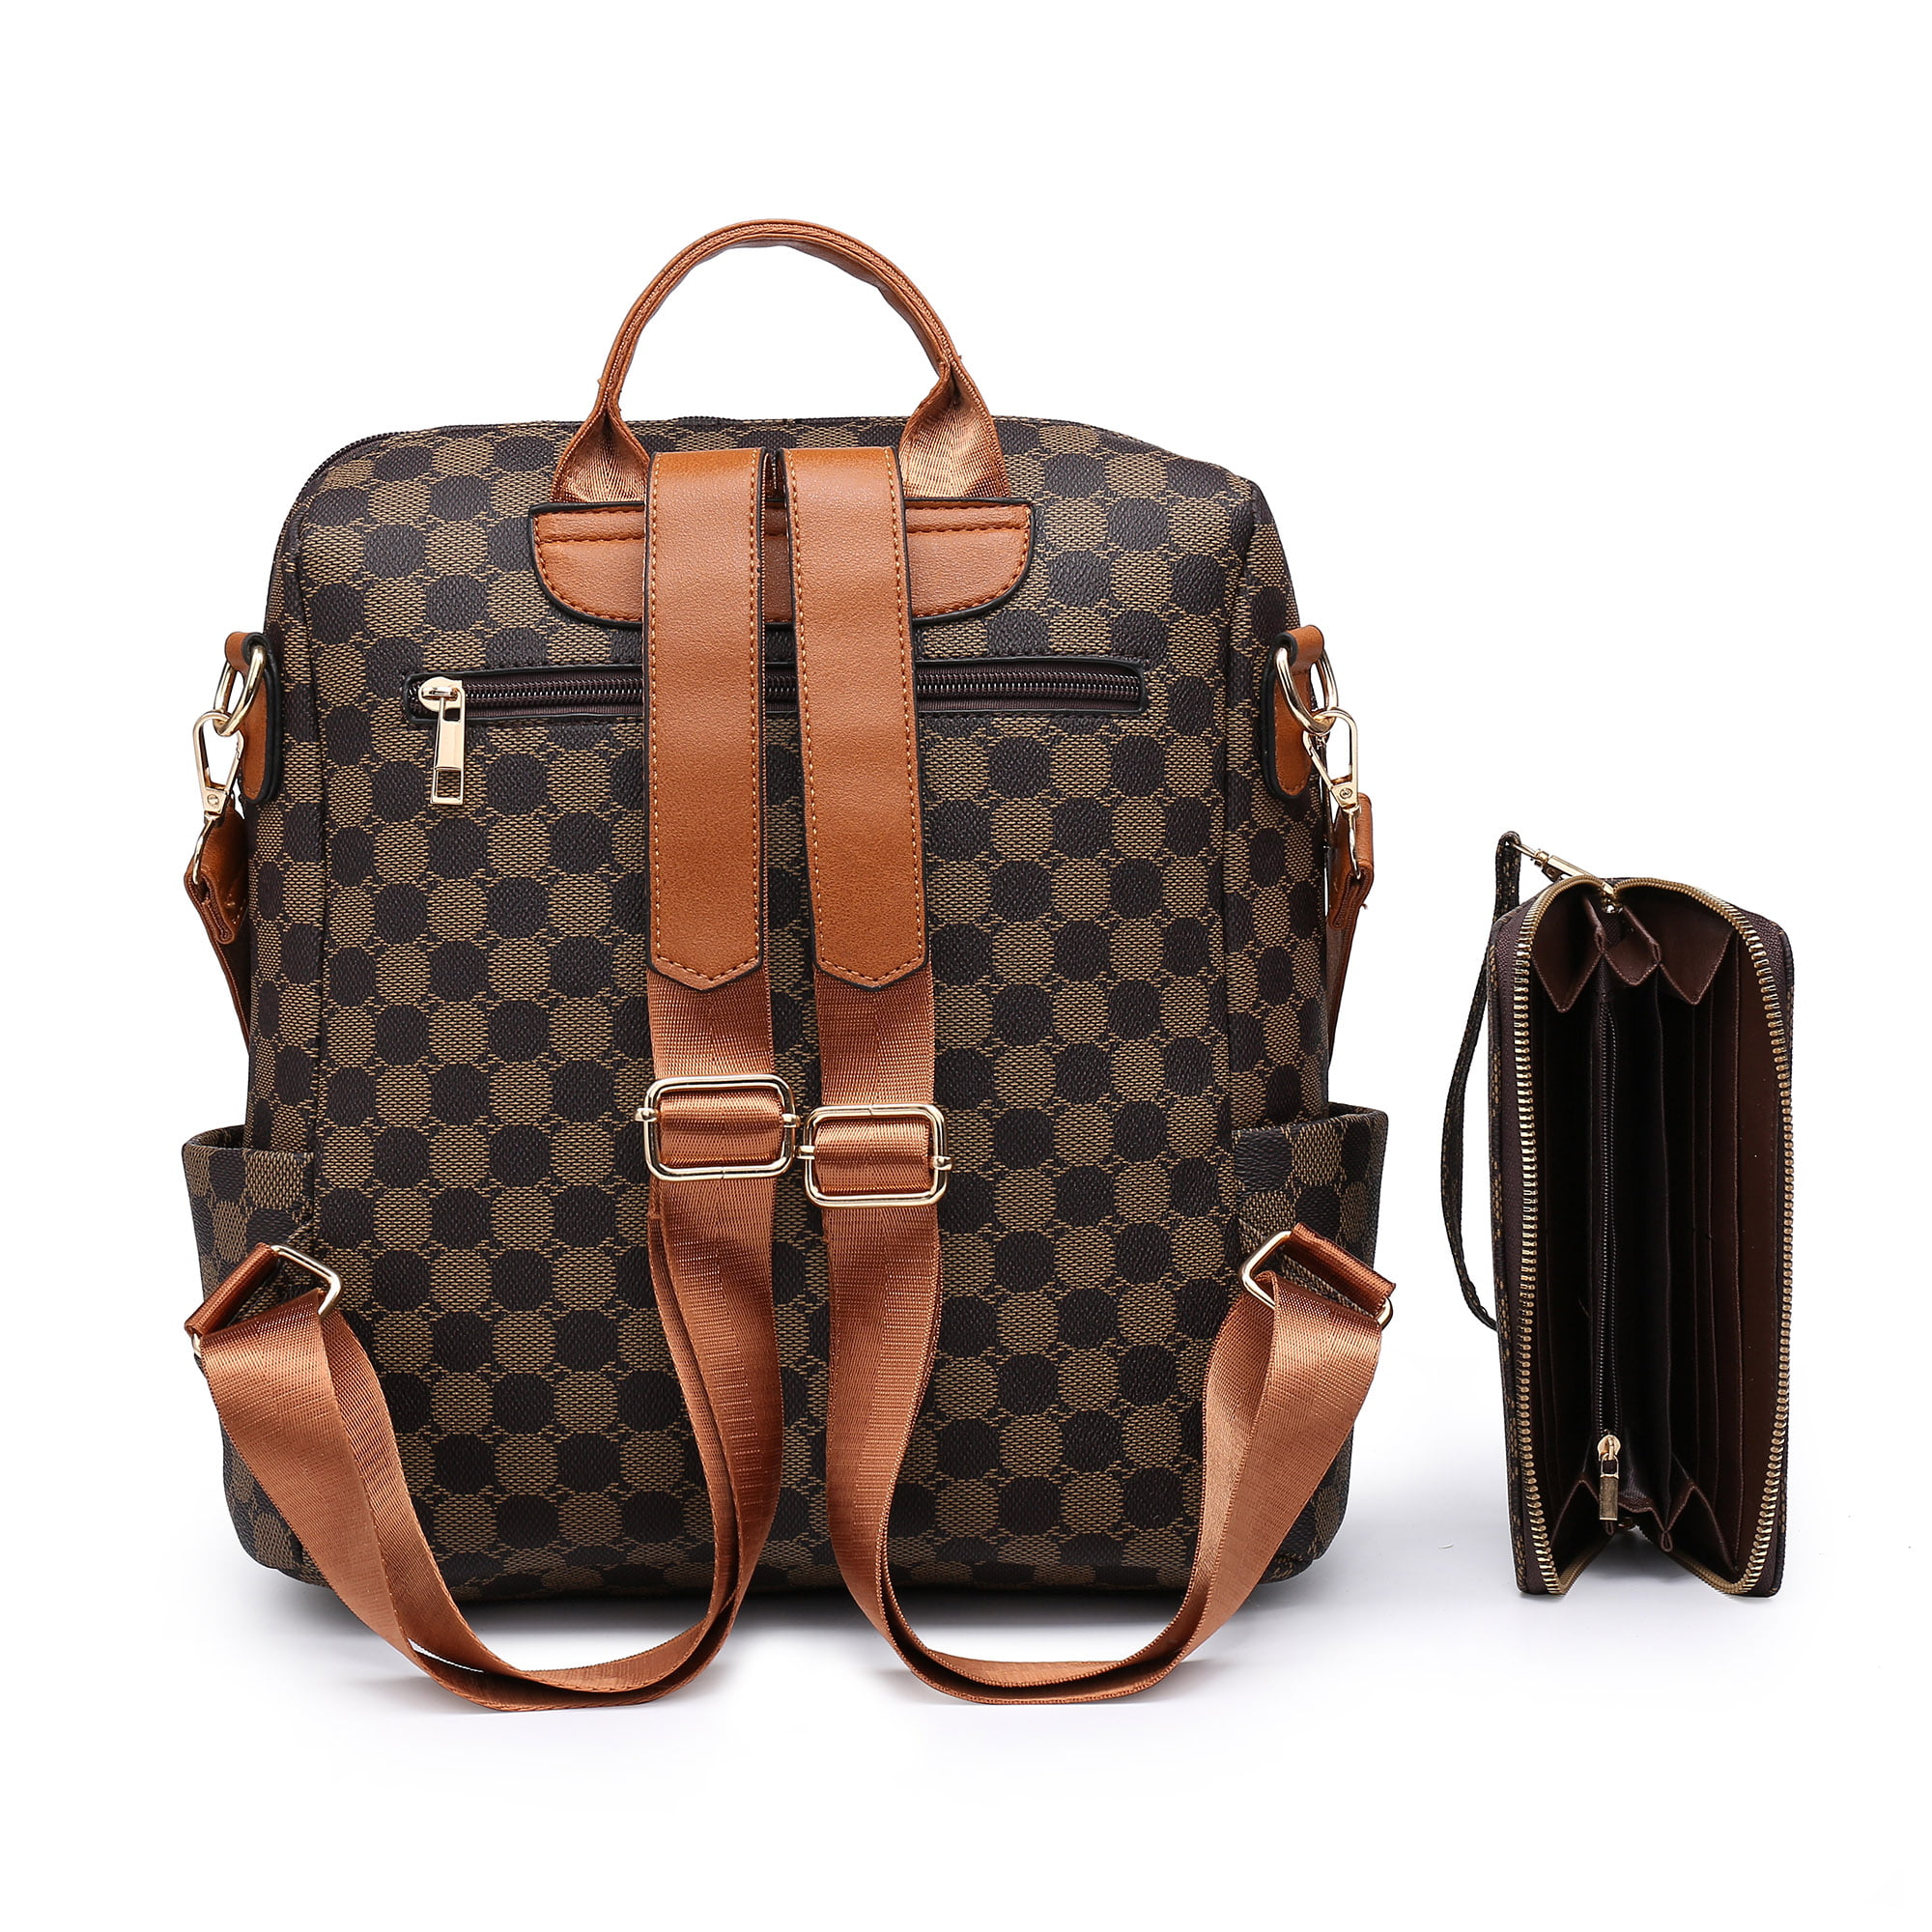 LOUIS VUITTON Leather Laptop Bag Messenger Bag Travel Tote hidalgomoncicom